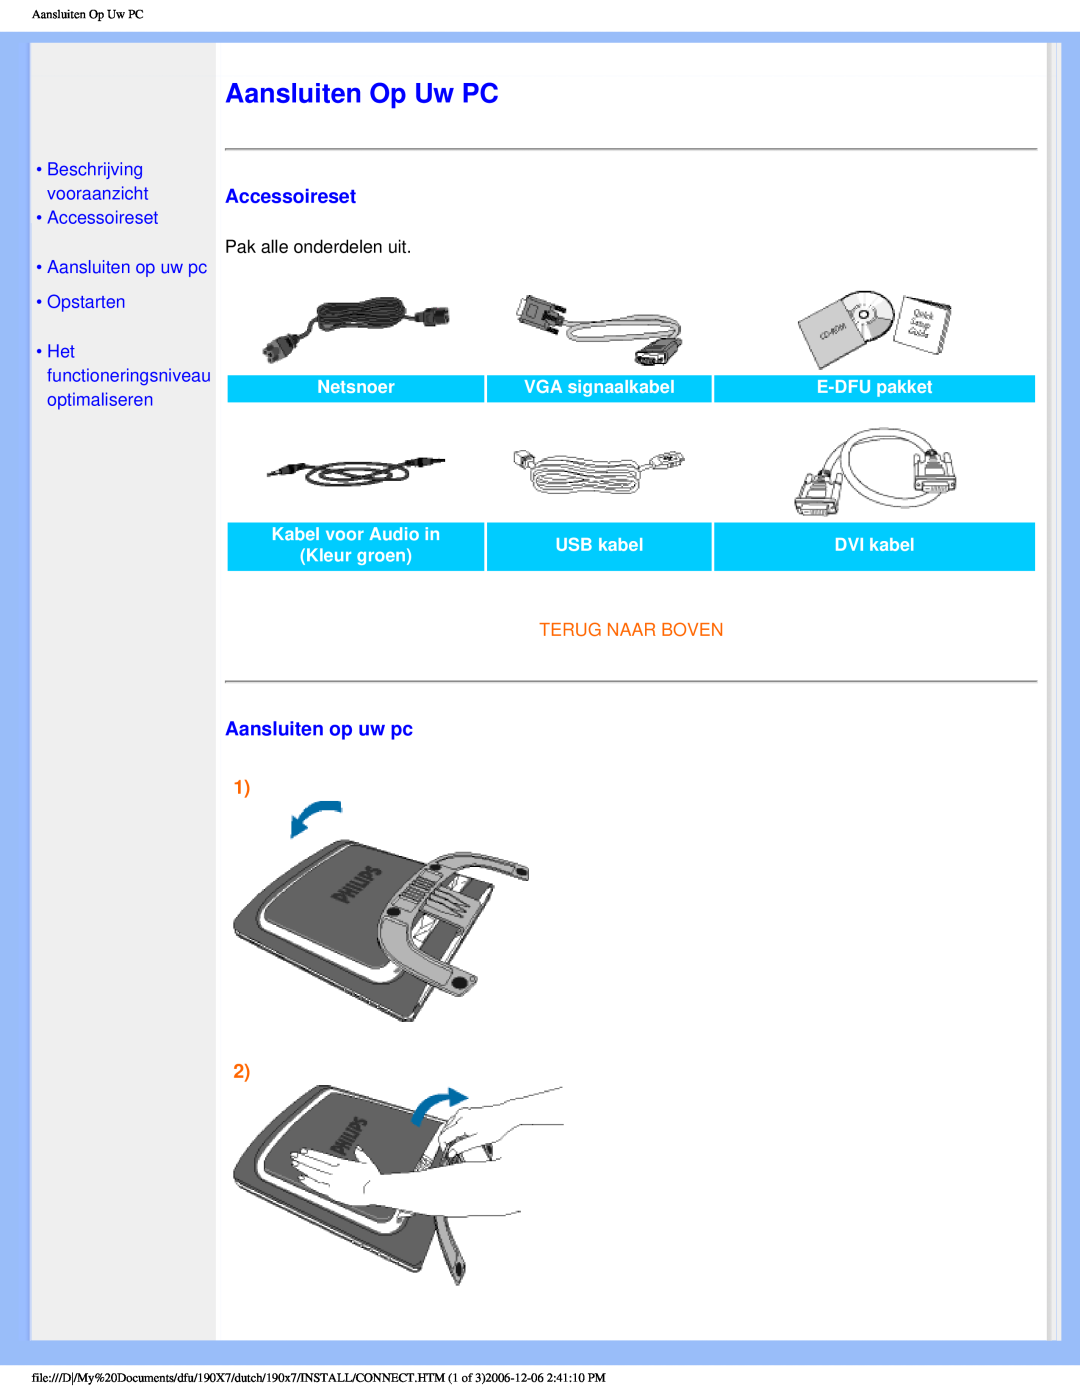 Philips 190X7 Aansluiten Op Uw PC, Aansluiten op uw pc, •Beschrijving vooraanzicht •Accessoireset, VGA signaalkabel 